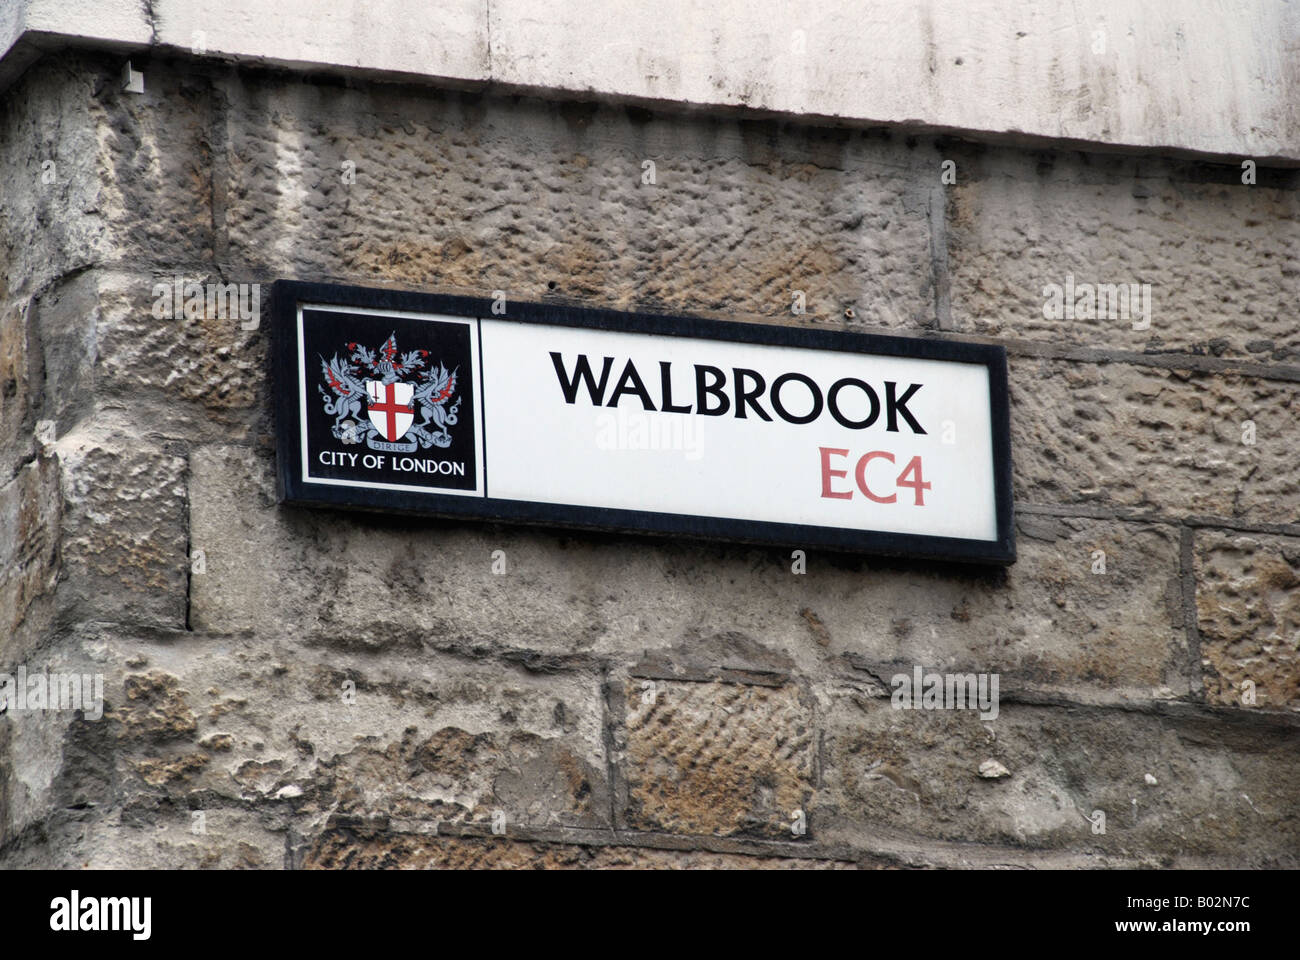 Walbrook street sign dans la ville de Londres Banque D'Images